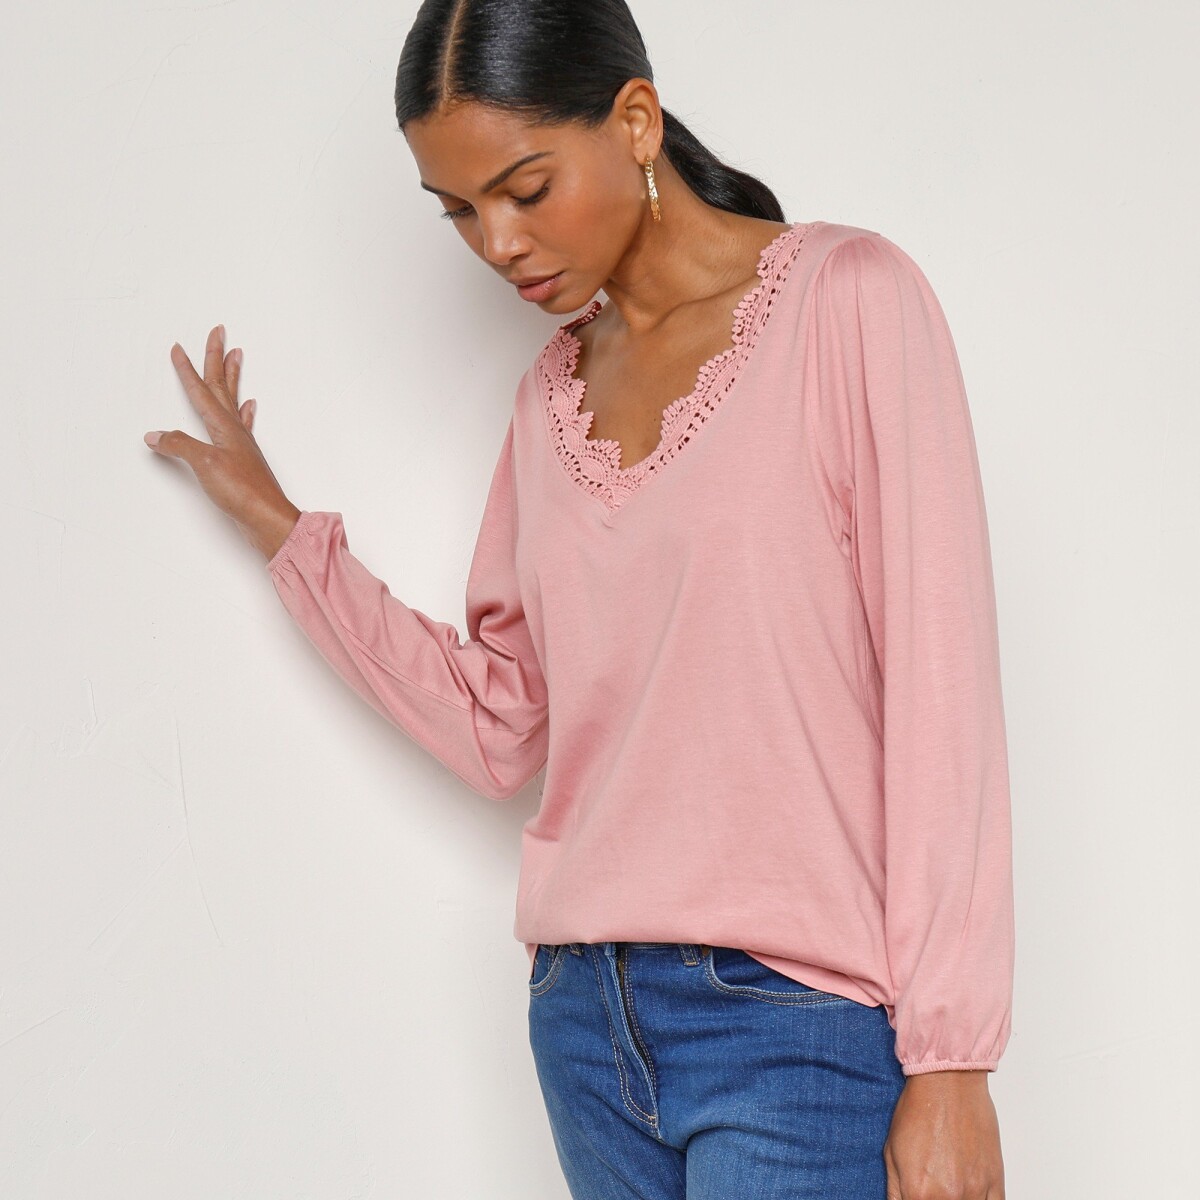 Tričko s macramé, výstrihom do  V  a dlhými rukávmi, jednofarebné ružové drevo 34 36